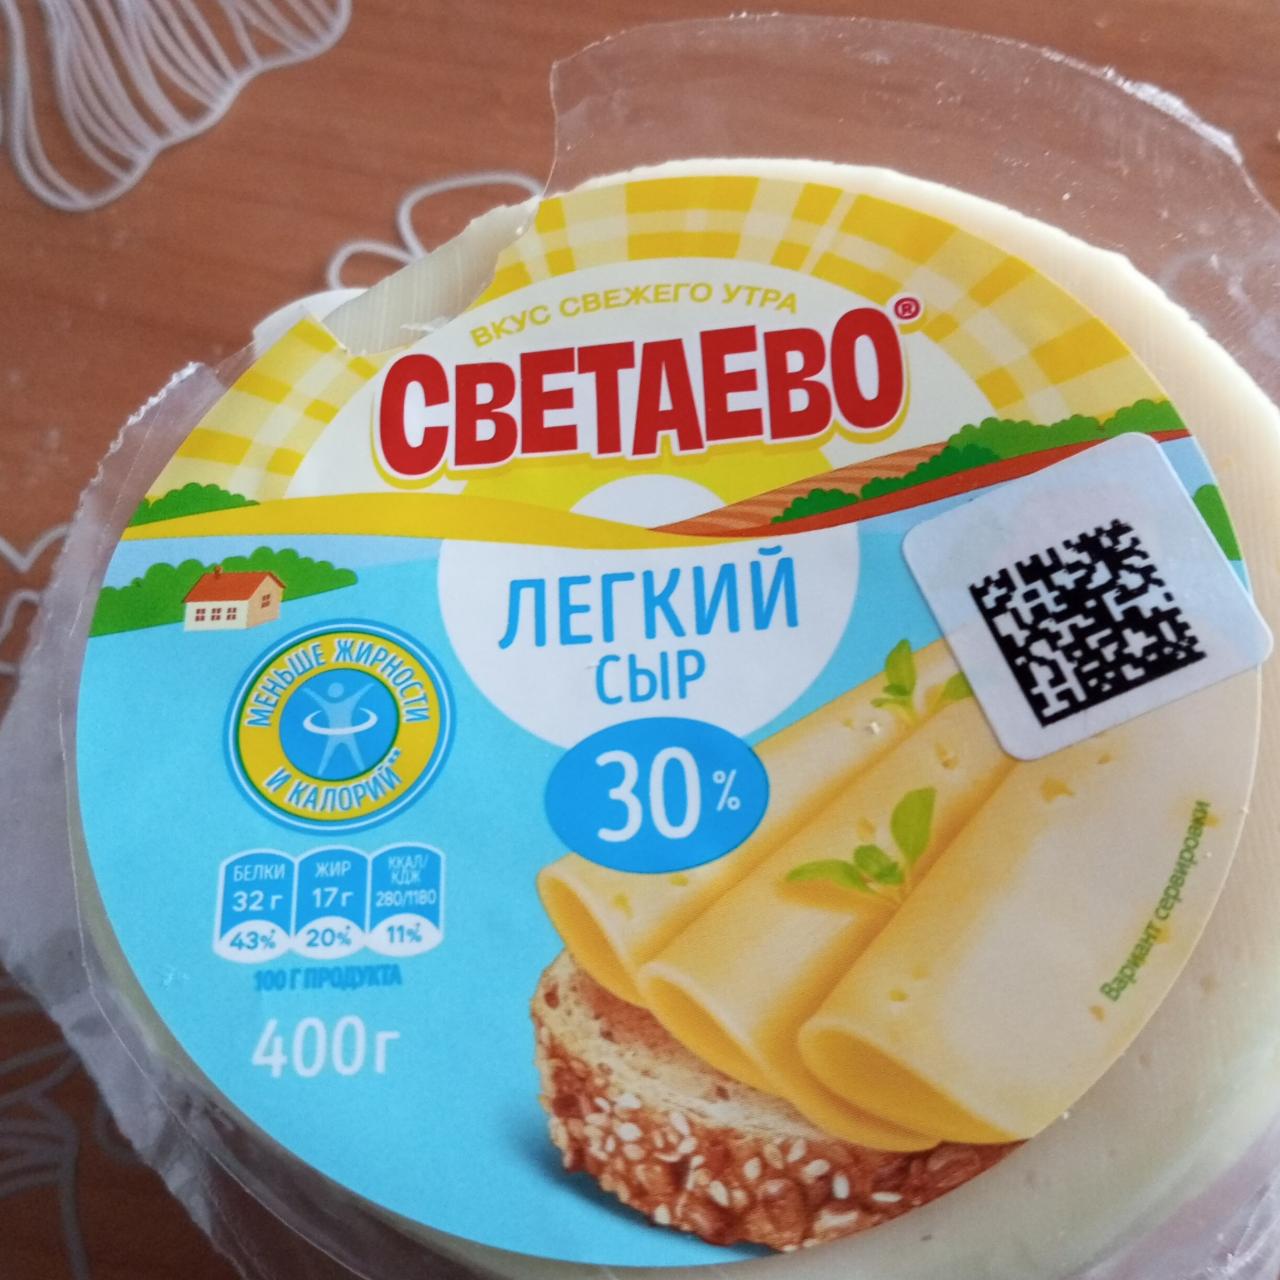 Фото - Сыр лёгкий 30% Светаево